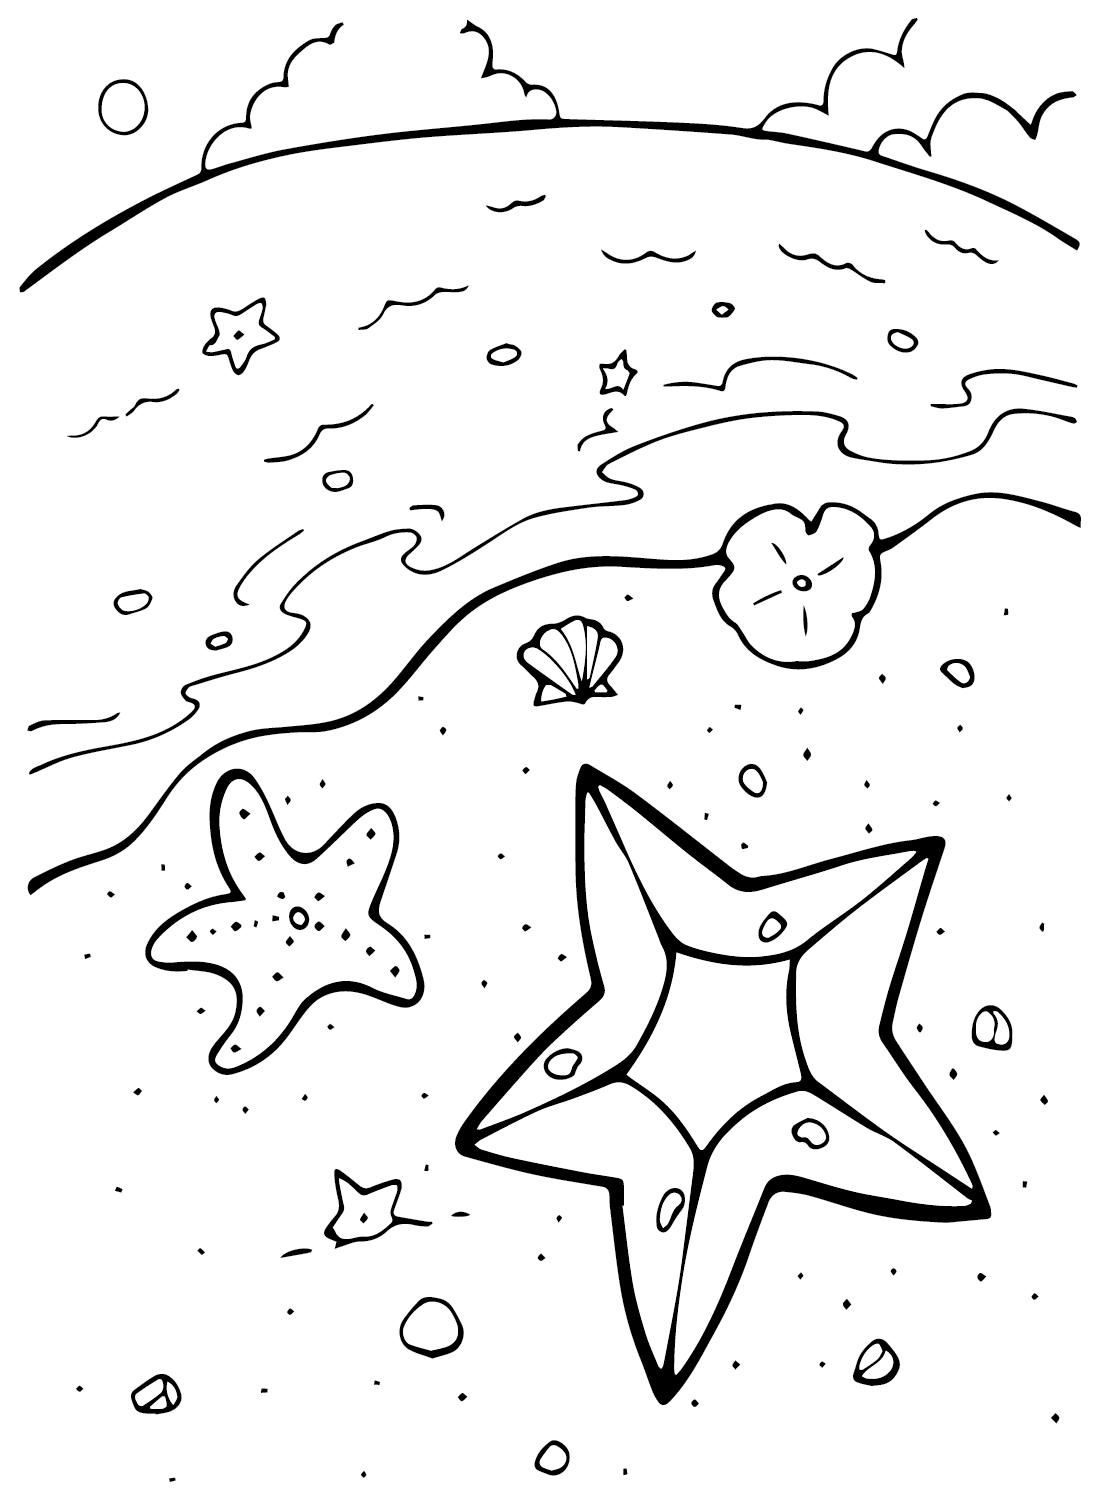 Dibujo de estrella de mar de estrella de mar